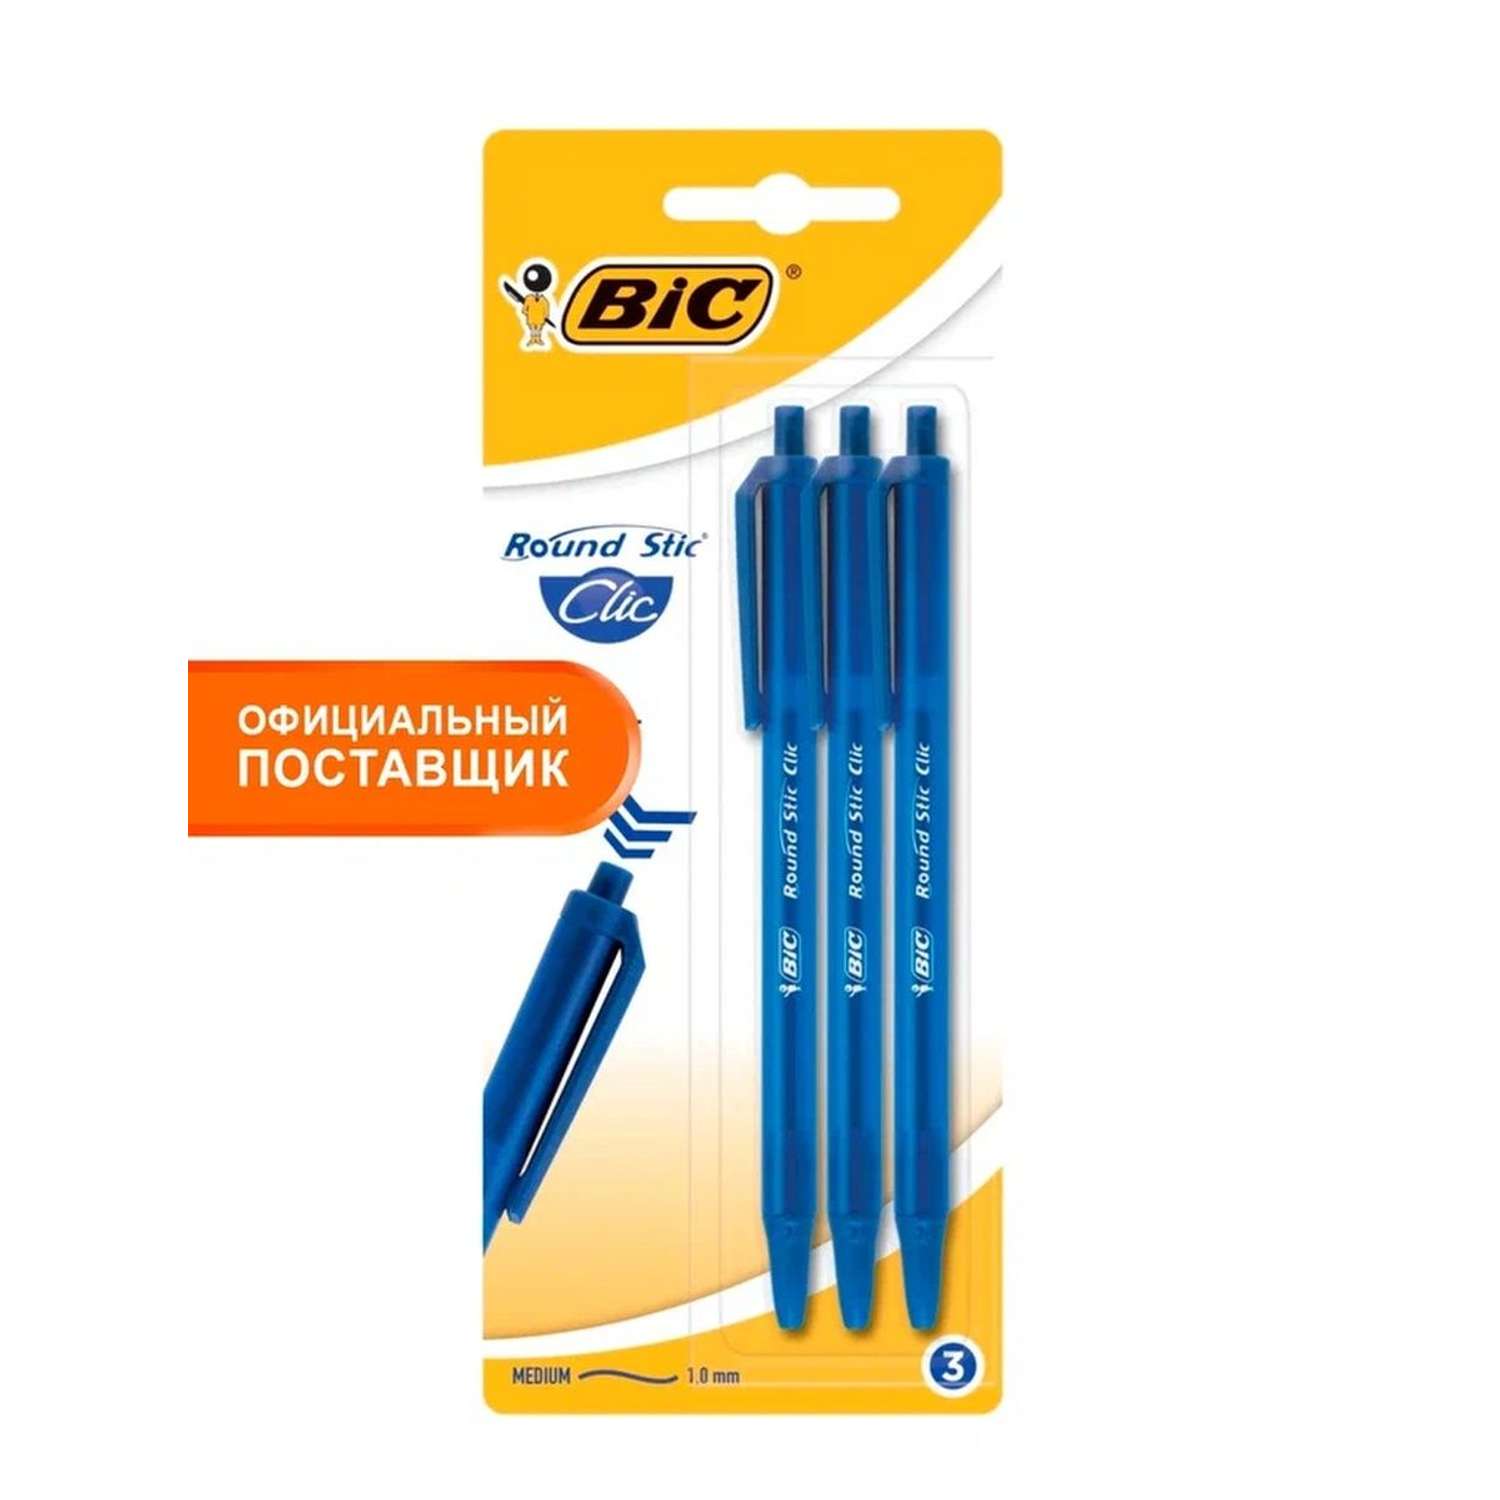 Ручка шариковая BIC Round Stic Clic синий 3 шт - фото 2